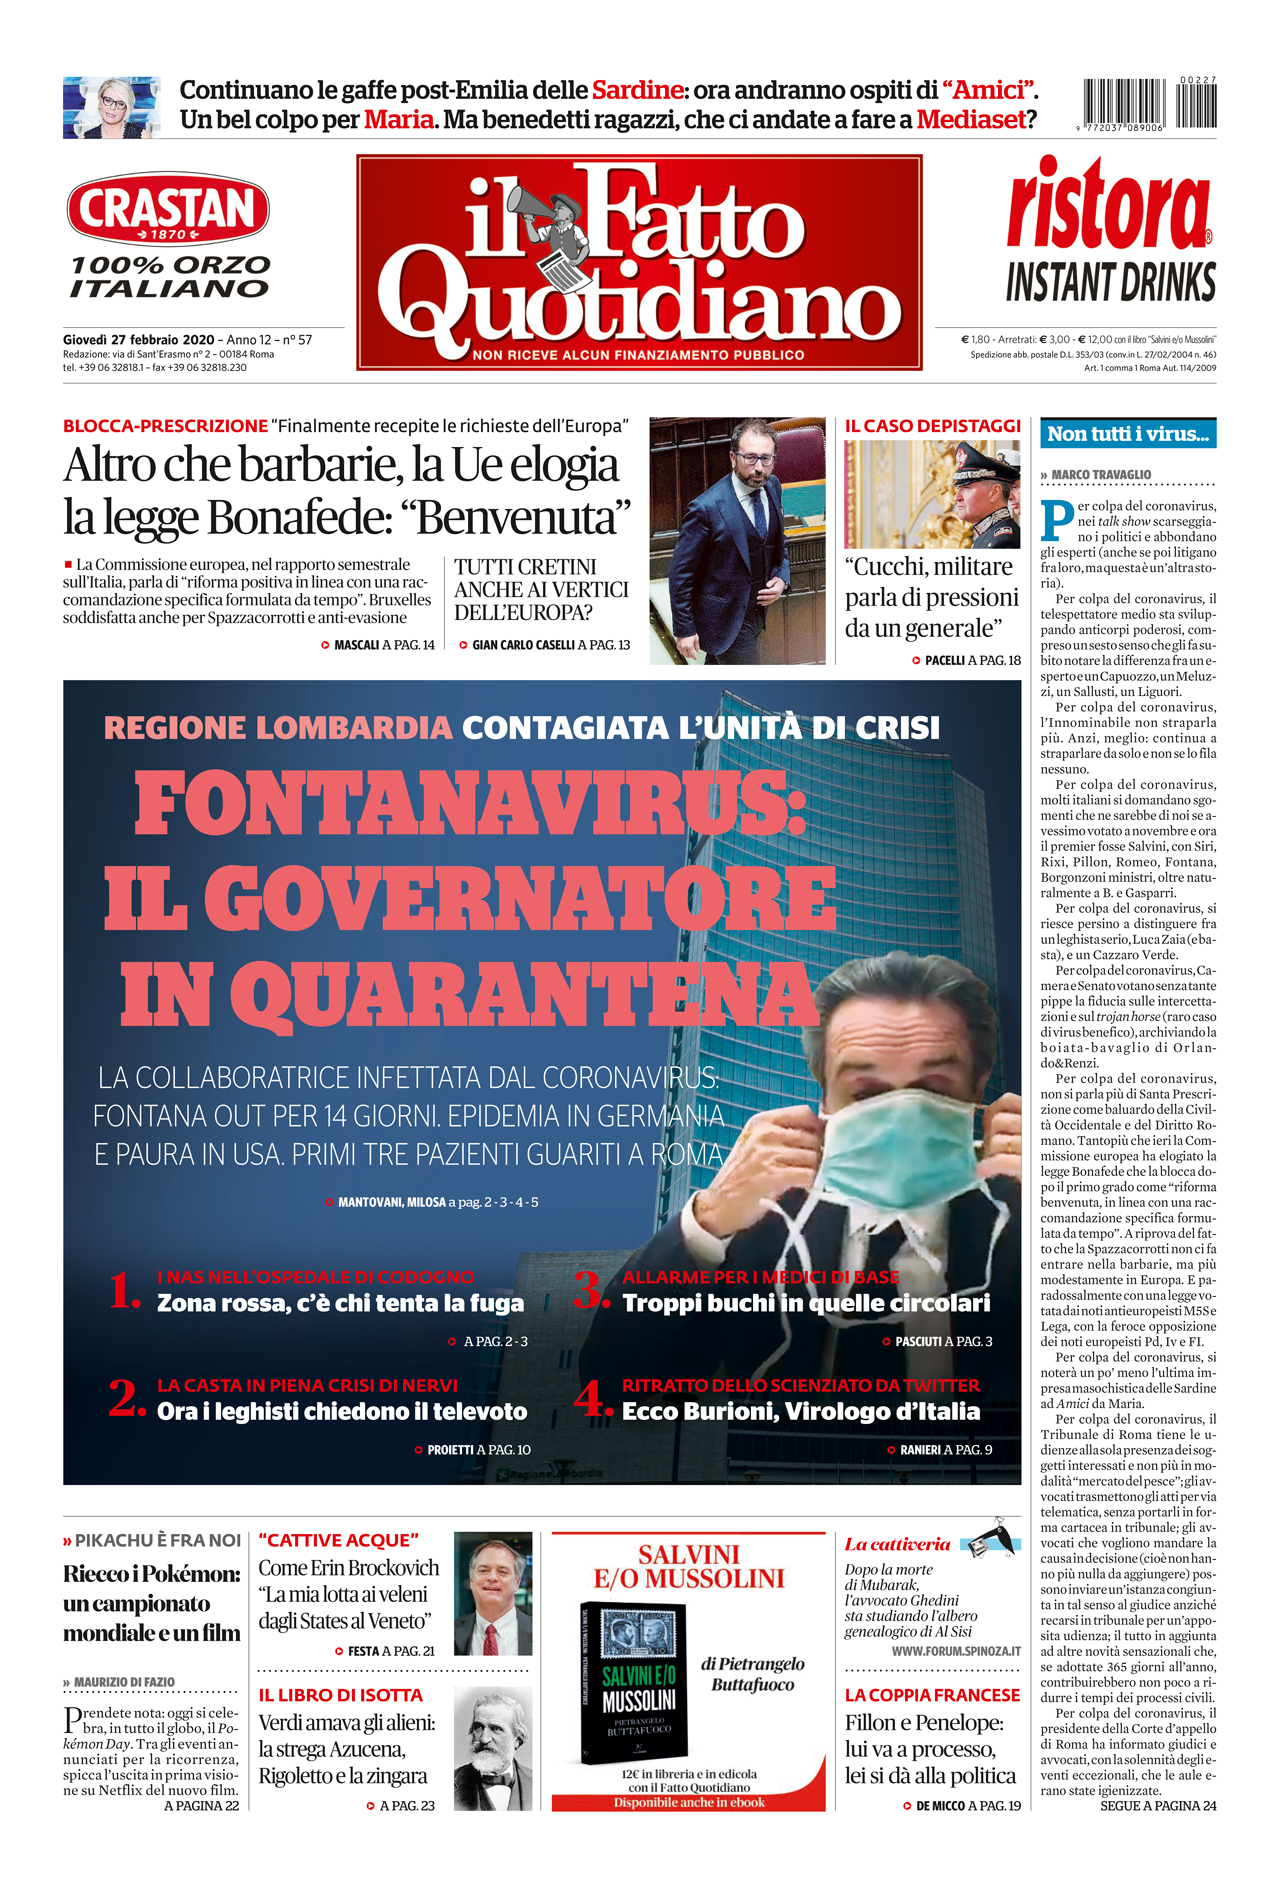 Prima Pagina Il Fatto Quotidiano - Fontanavirus: il Governatore in quarantena